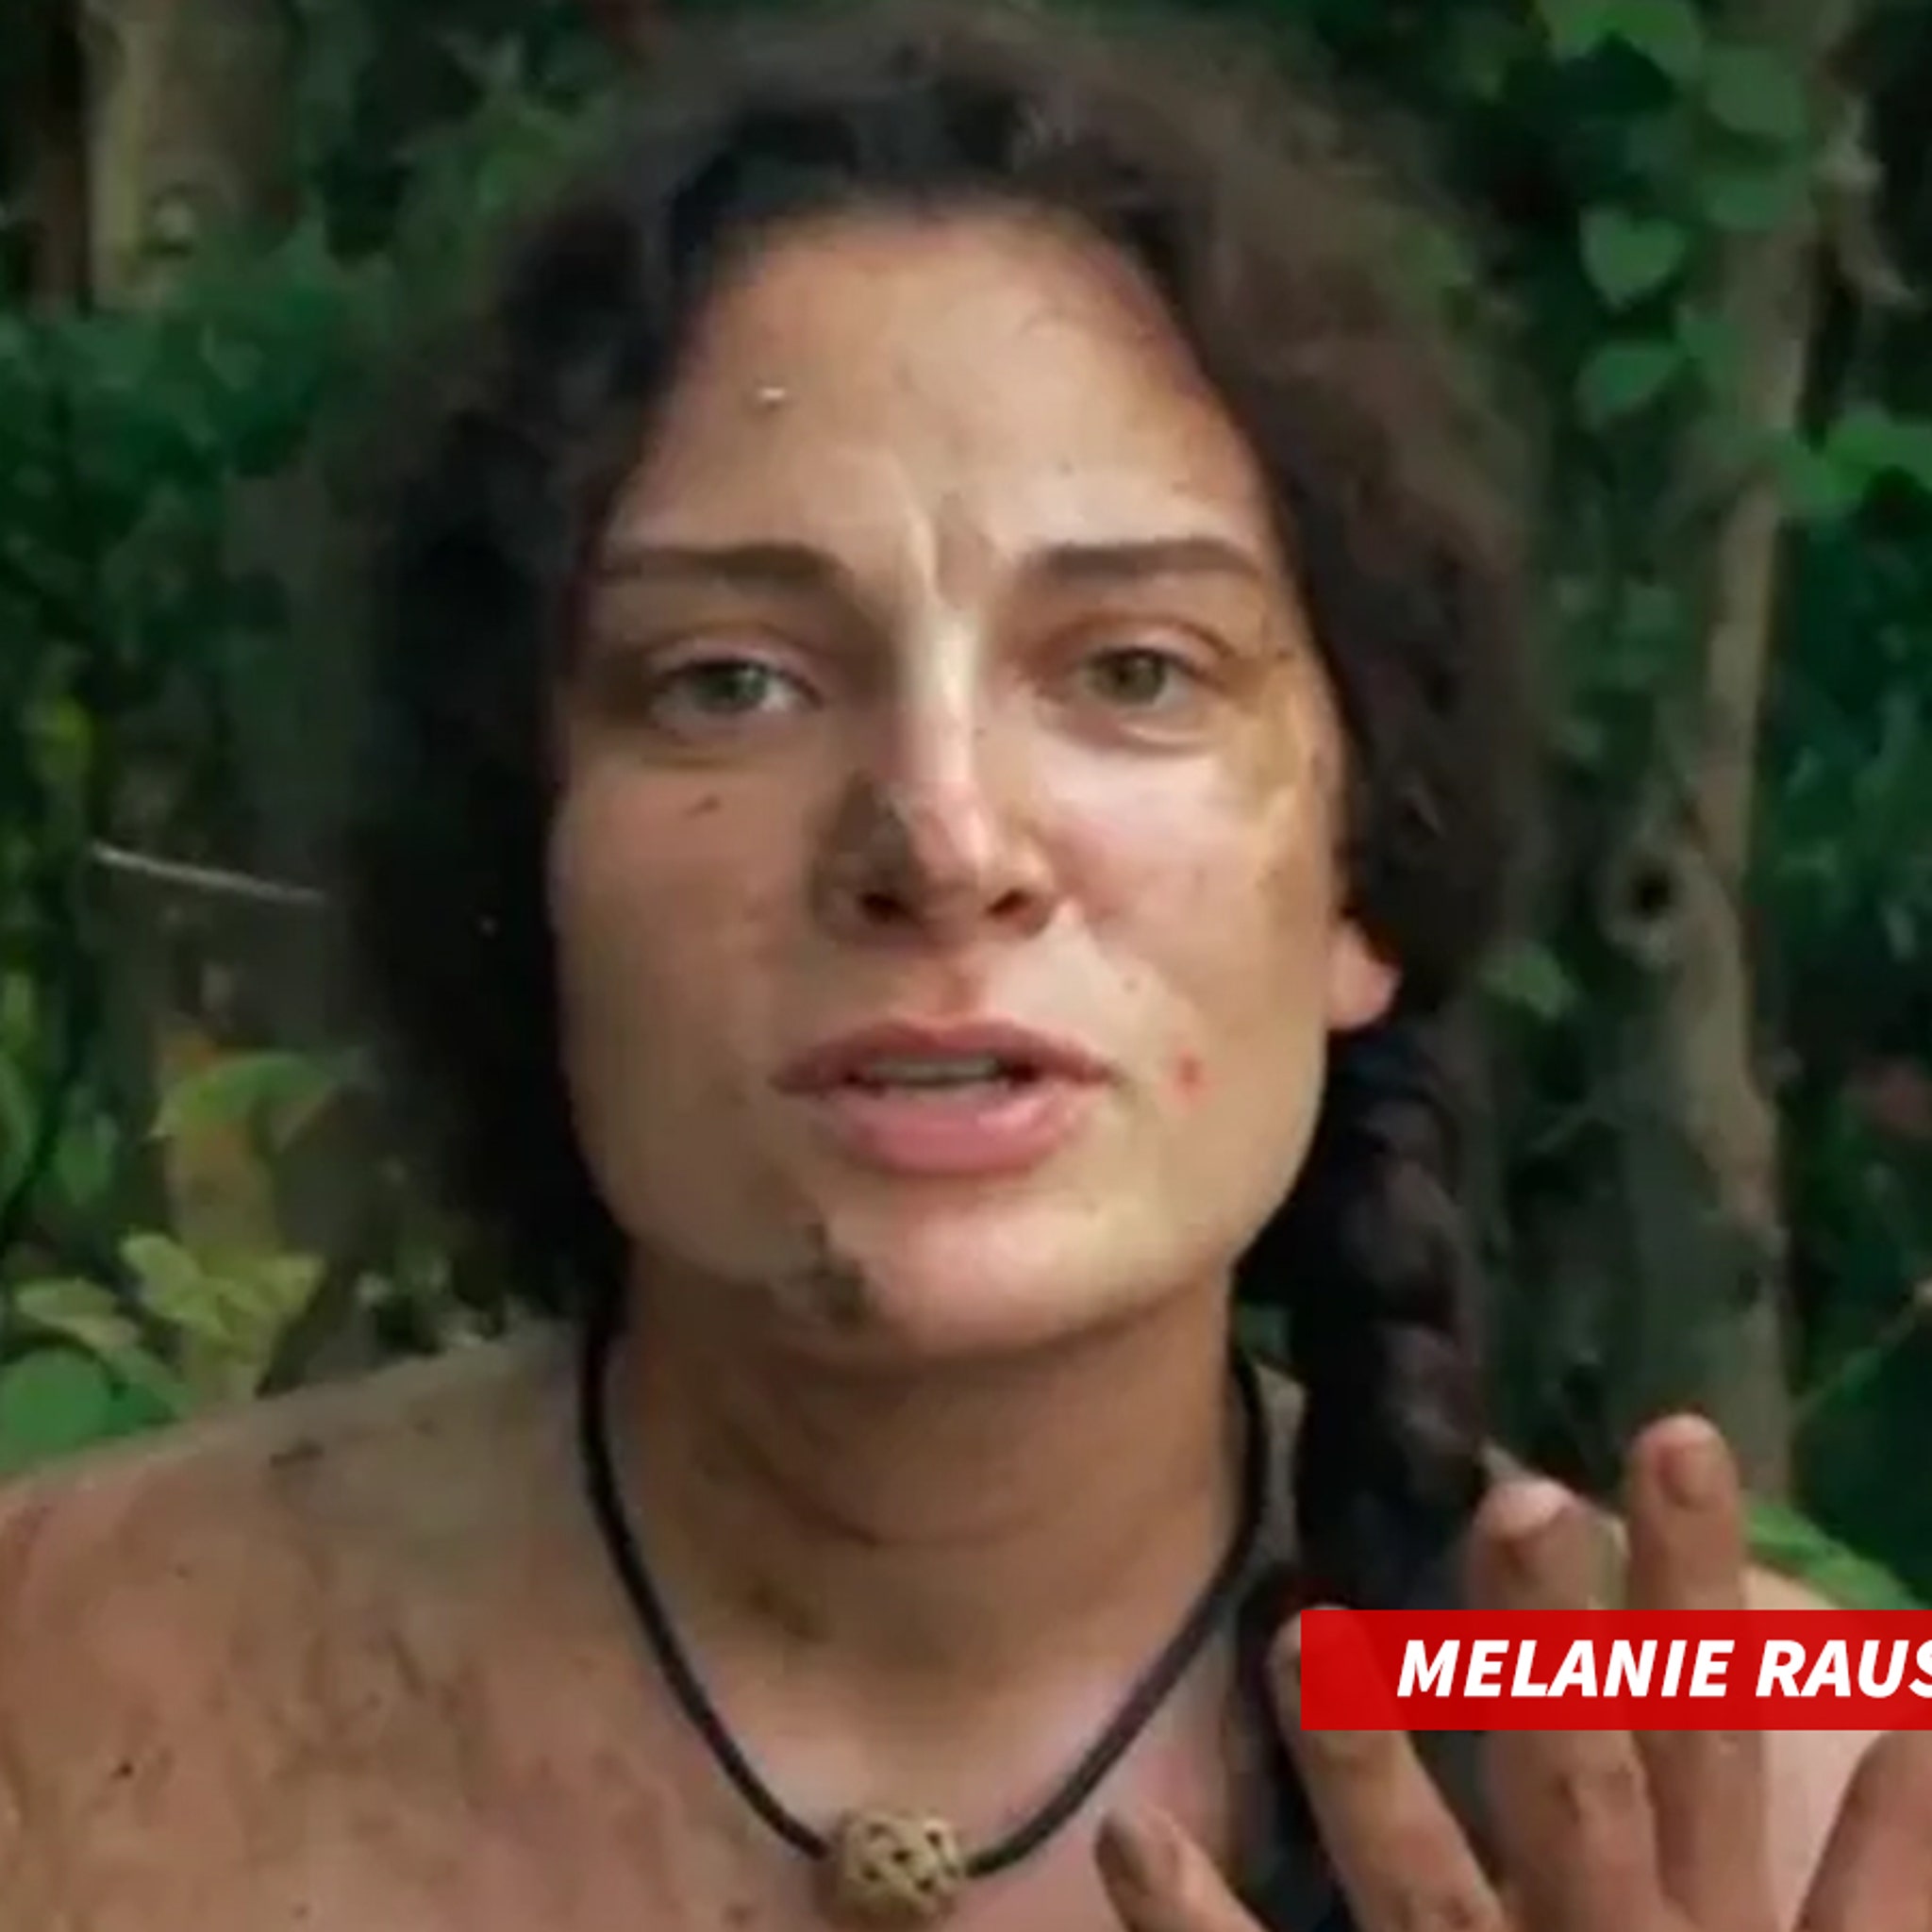 Naked and Afraid' Contestant Melanie Rauscher Found Dead